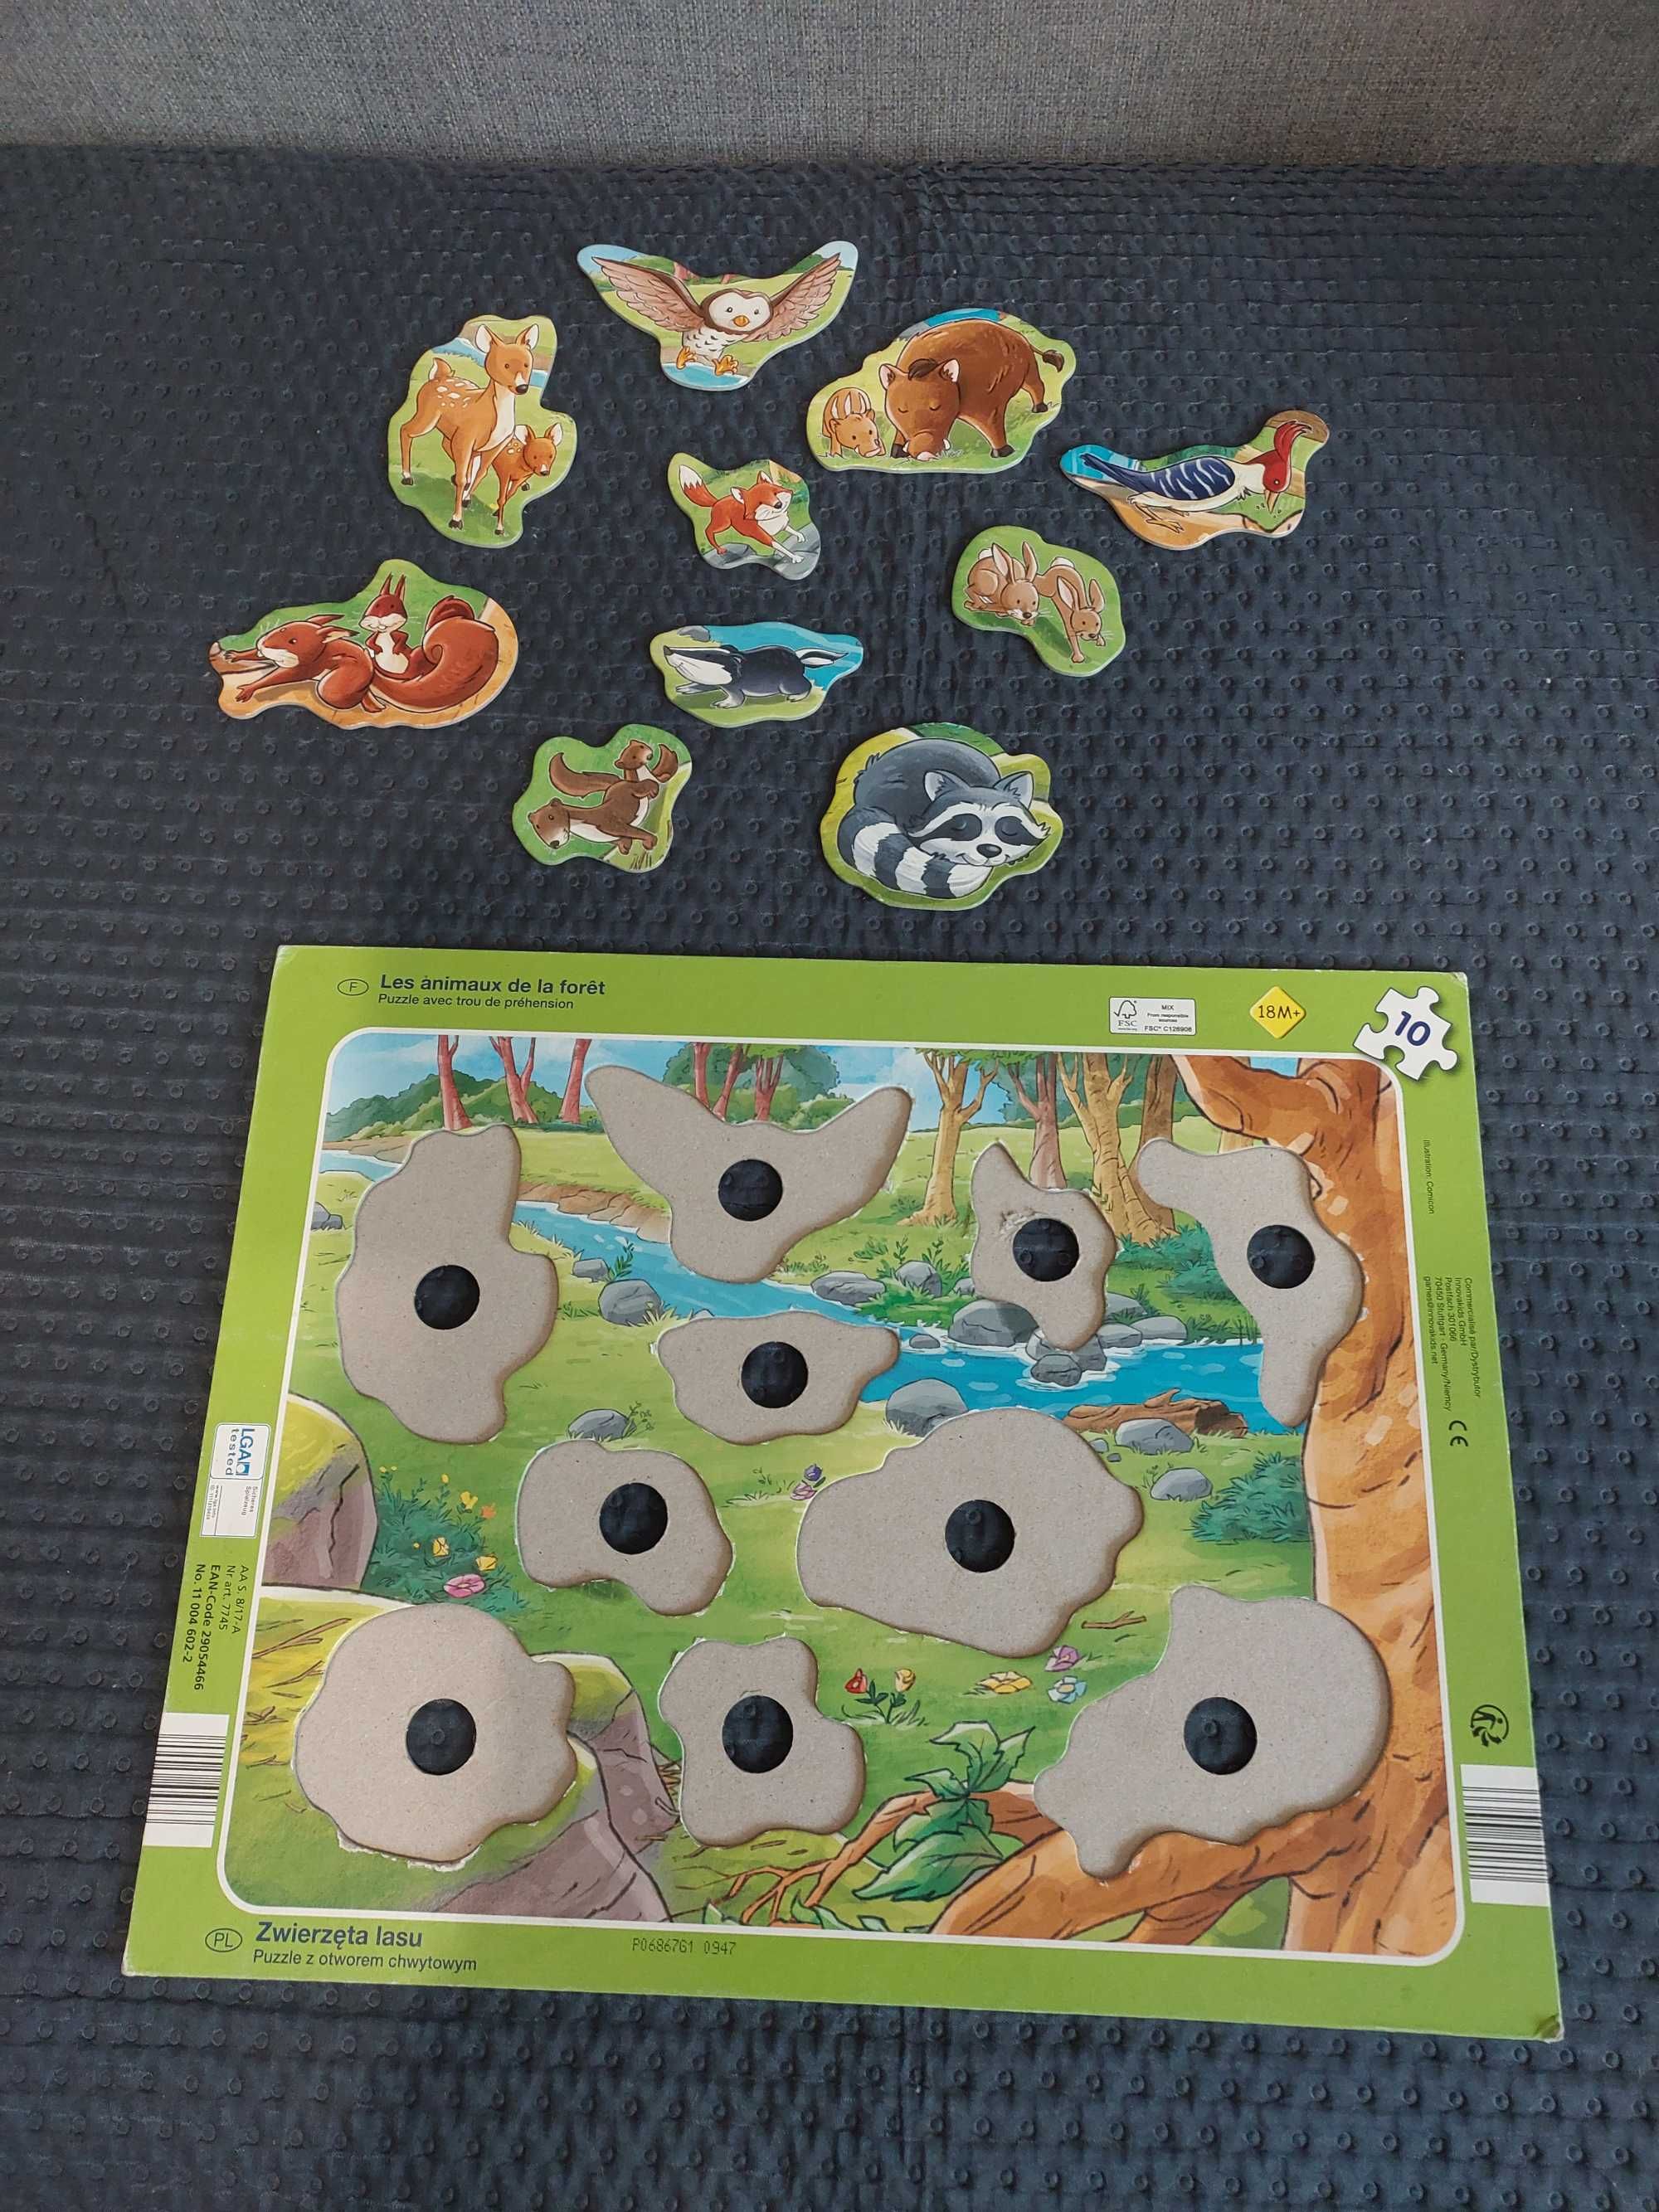 Puzzle z otworem chwytowym Zwierzątka lasu plus grais książeczka